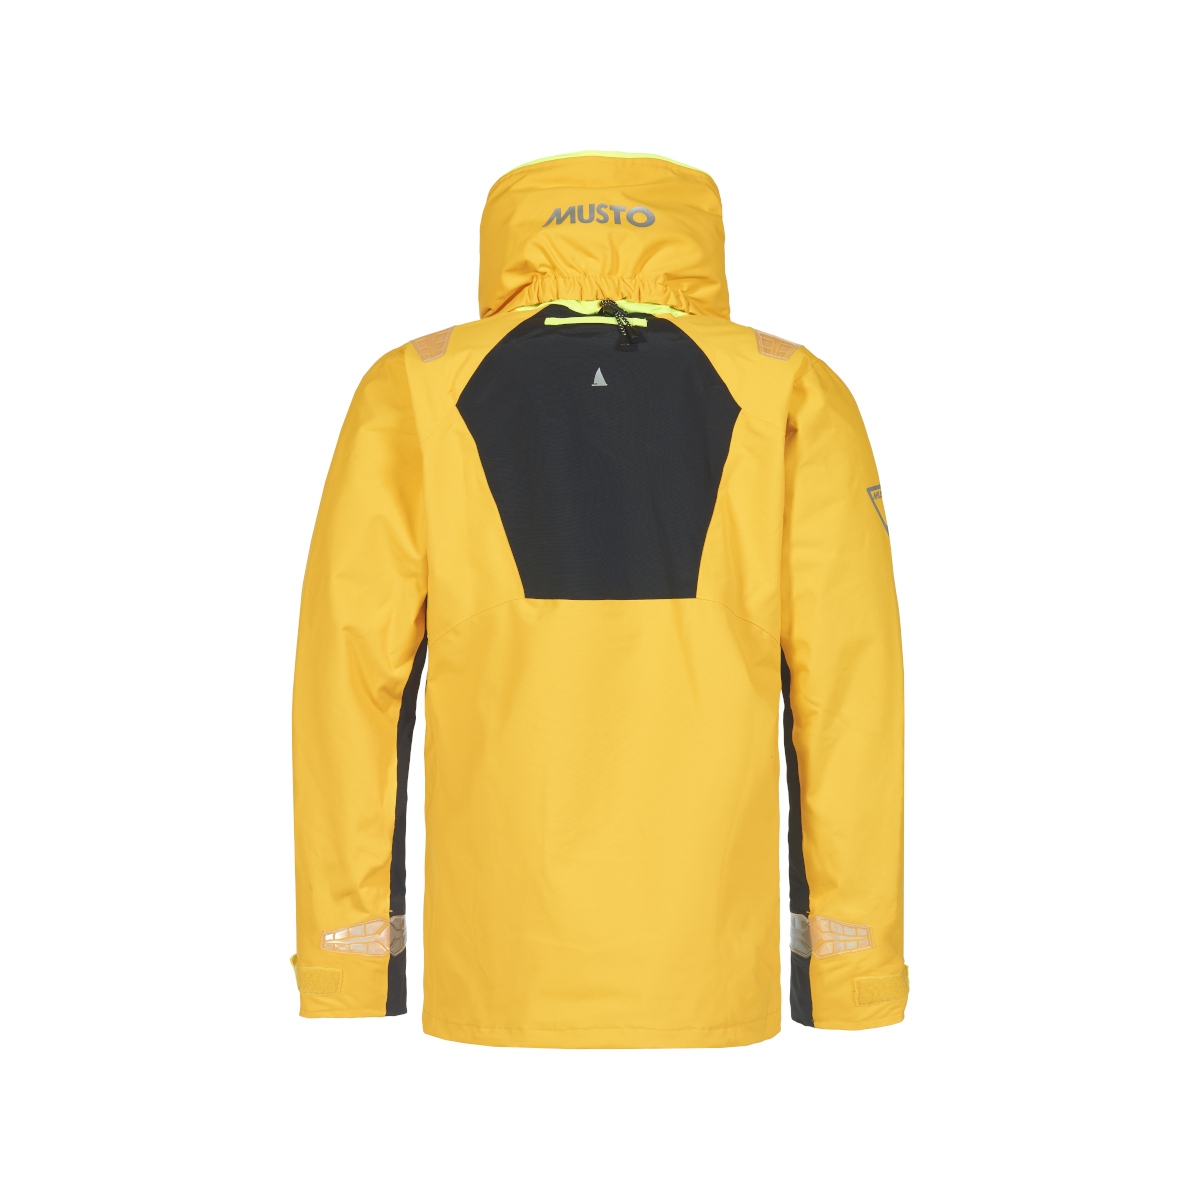 Musto BR2 veste de voile Offshore 2.0 femme jaune, taille 8